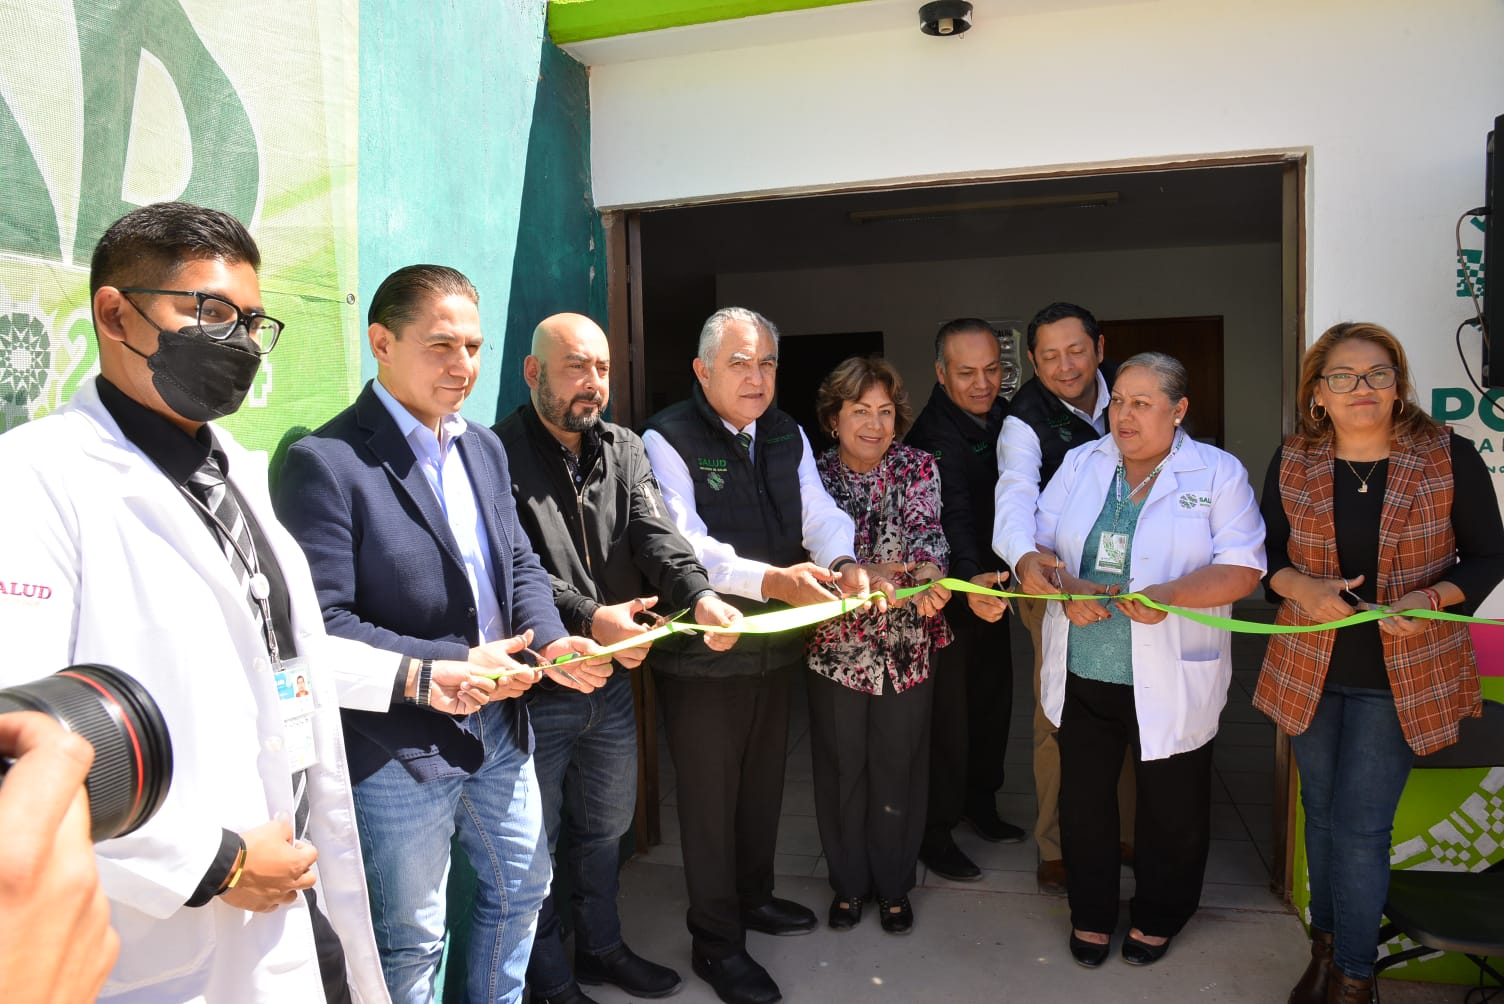 La inauguración de este recinto, forma parte de los compromisos establecidos por la alcaldesa, Leonor Noyola